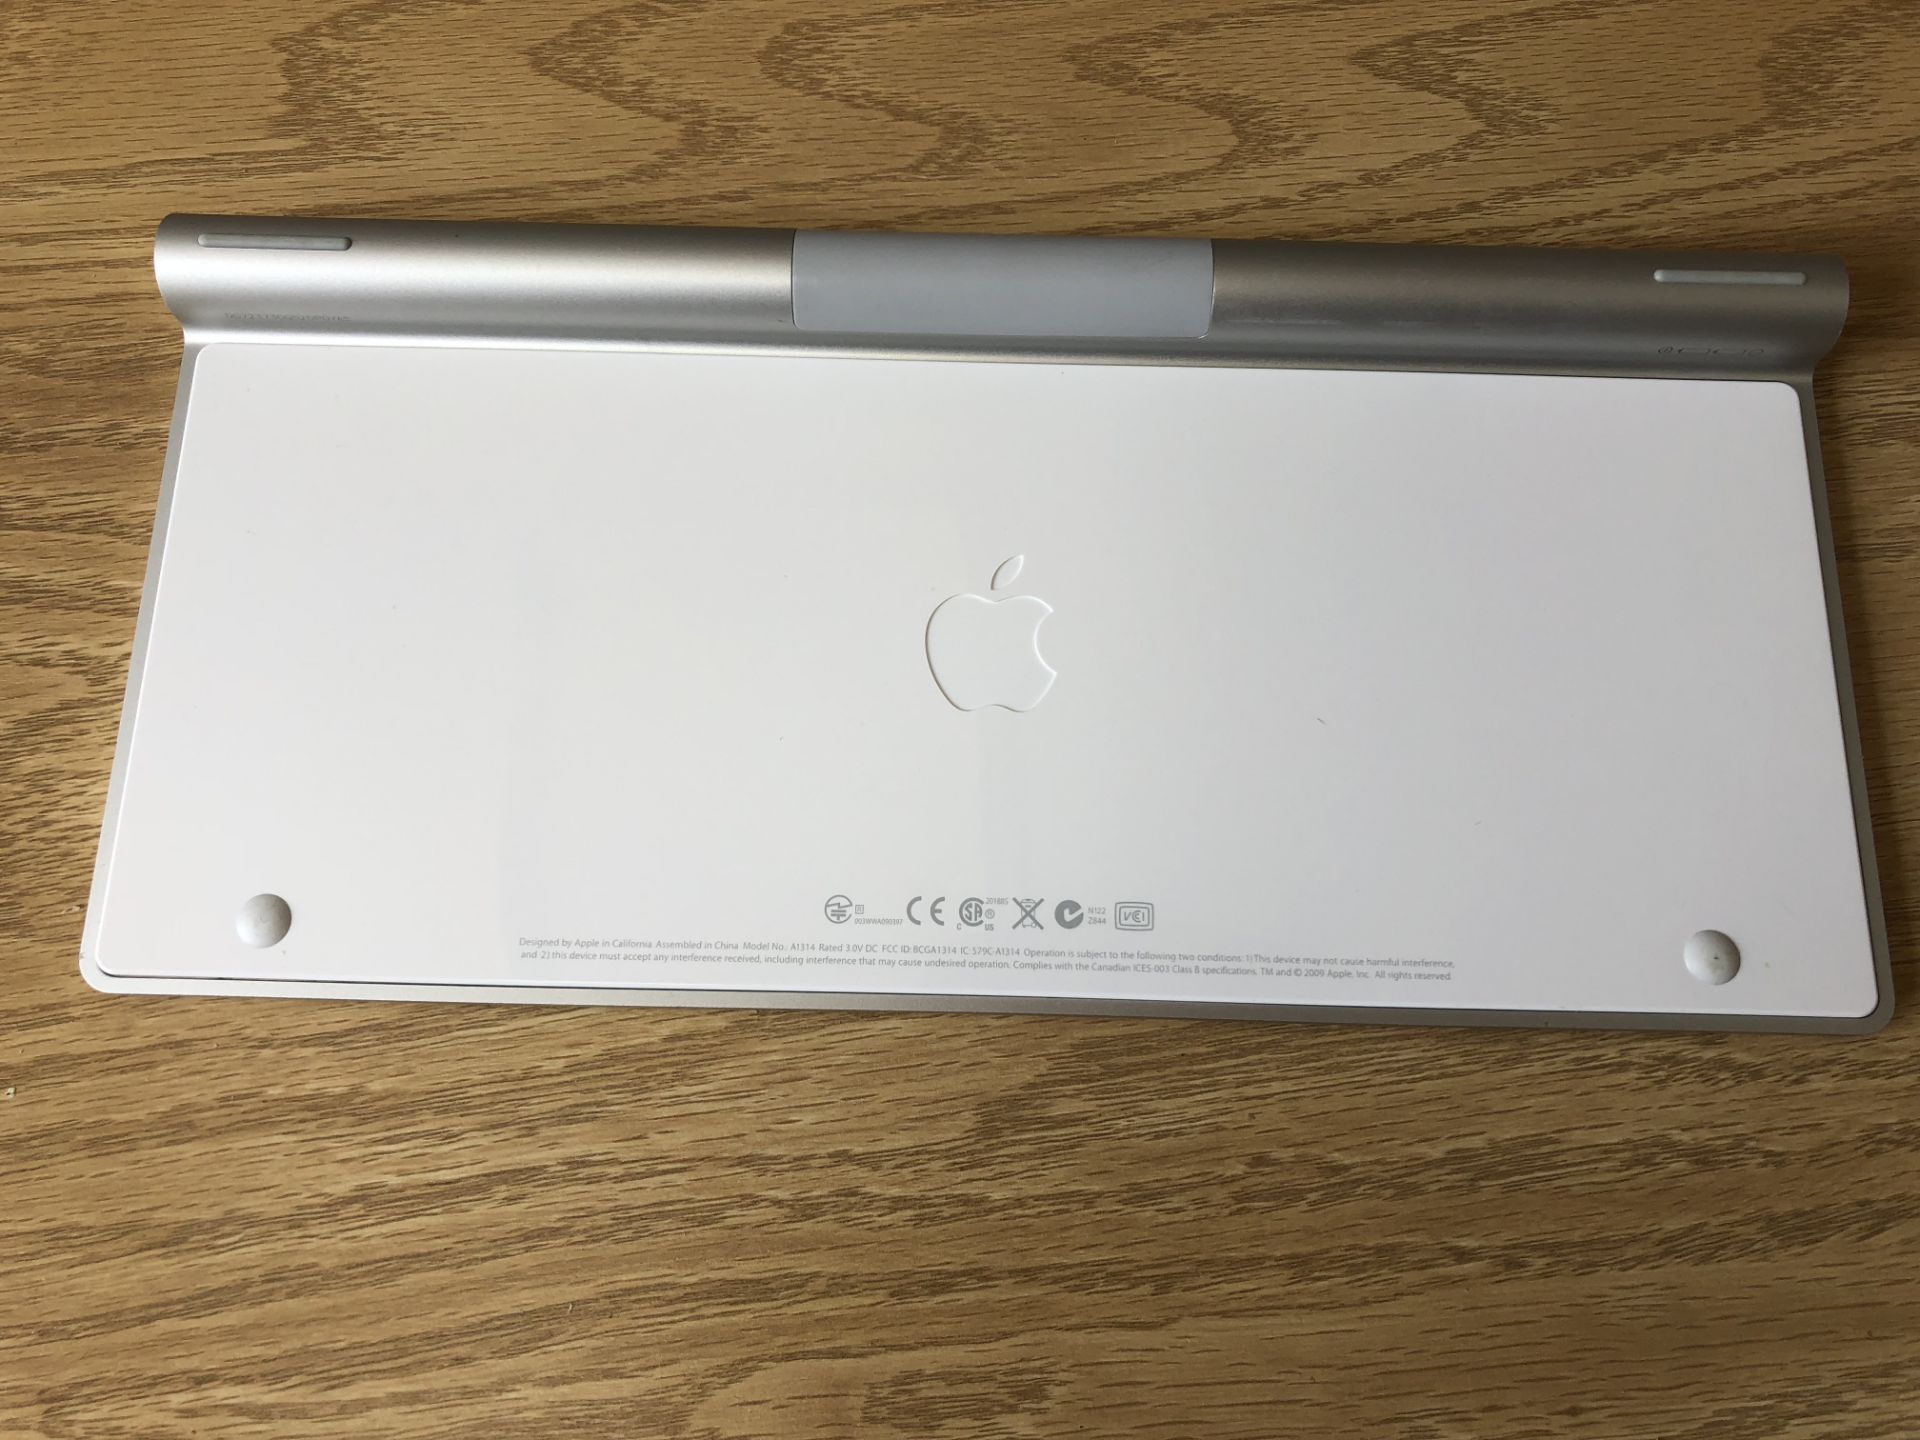 Apple Wireless Keyboard, Model No. A1314 - Image 2 of 2